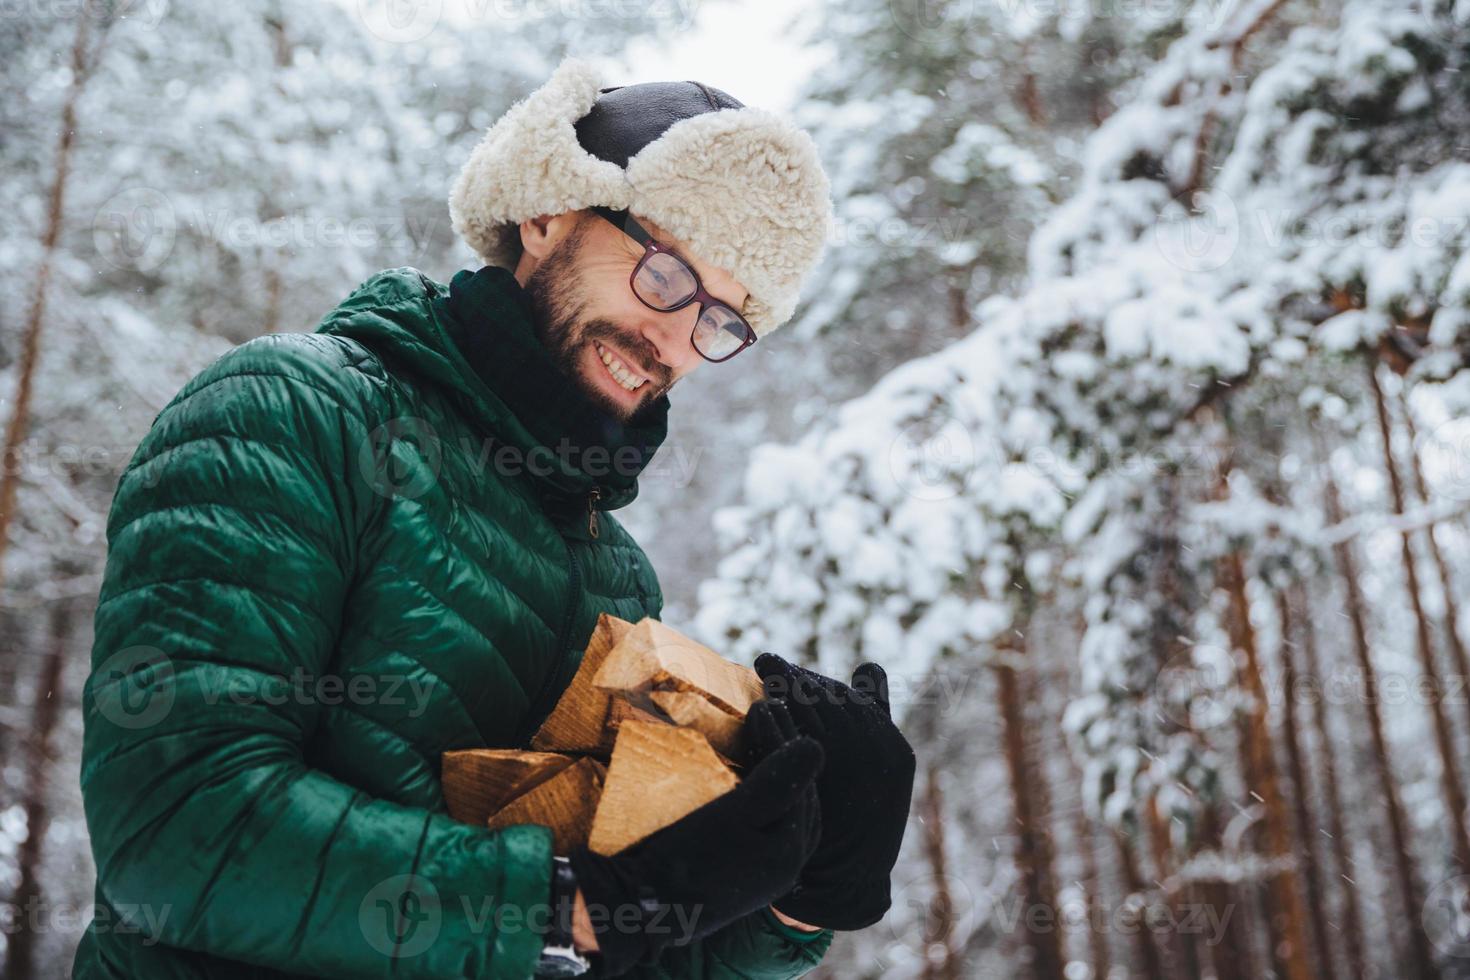 zufriedener mann mit brille schaut glücklich auf brennholz, das er im winterwald schlägt, um feuer zu machen, trägt grünen anorak, posiert vor weißem winterwald. menschen, lebensstil, erholungskonzept foto